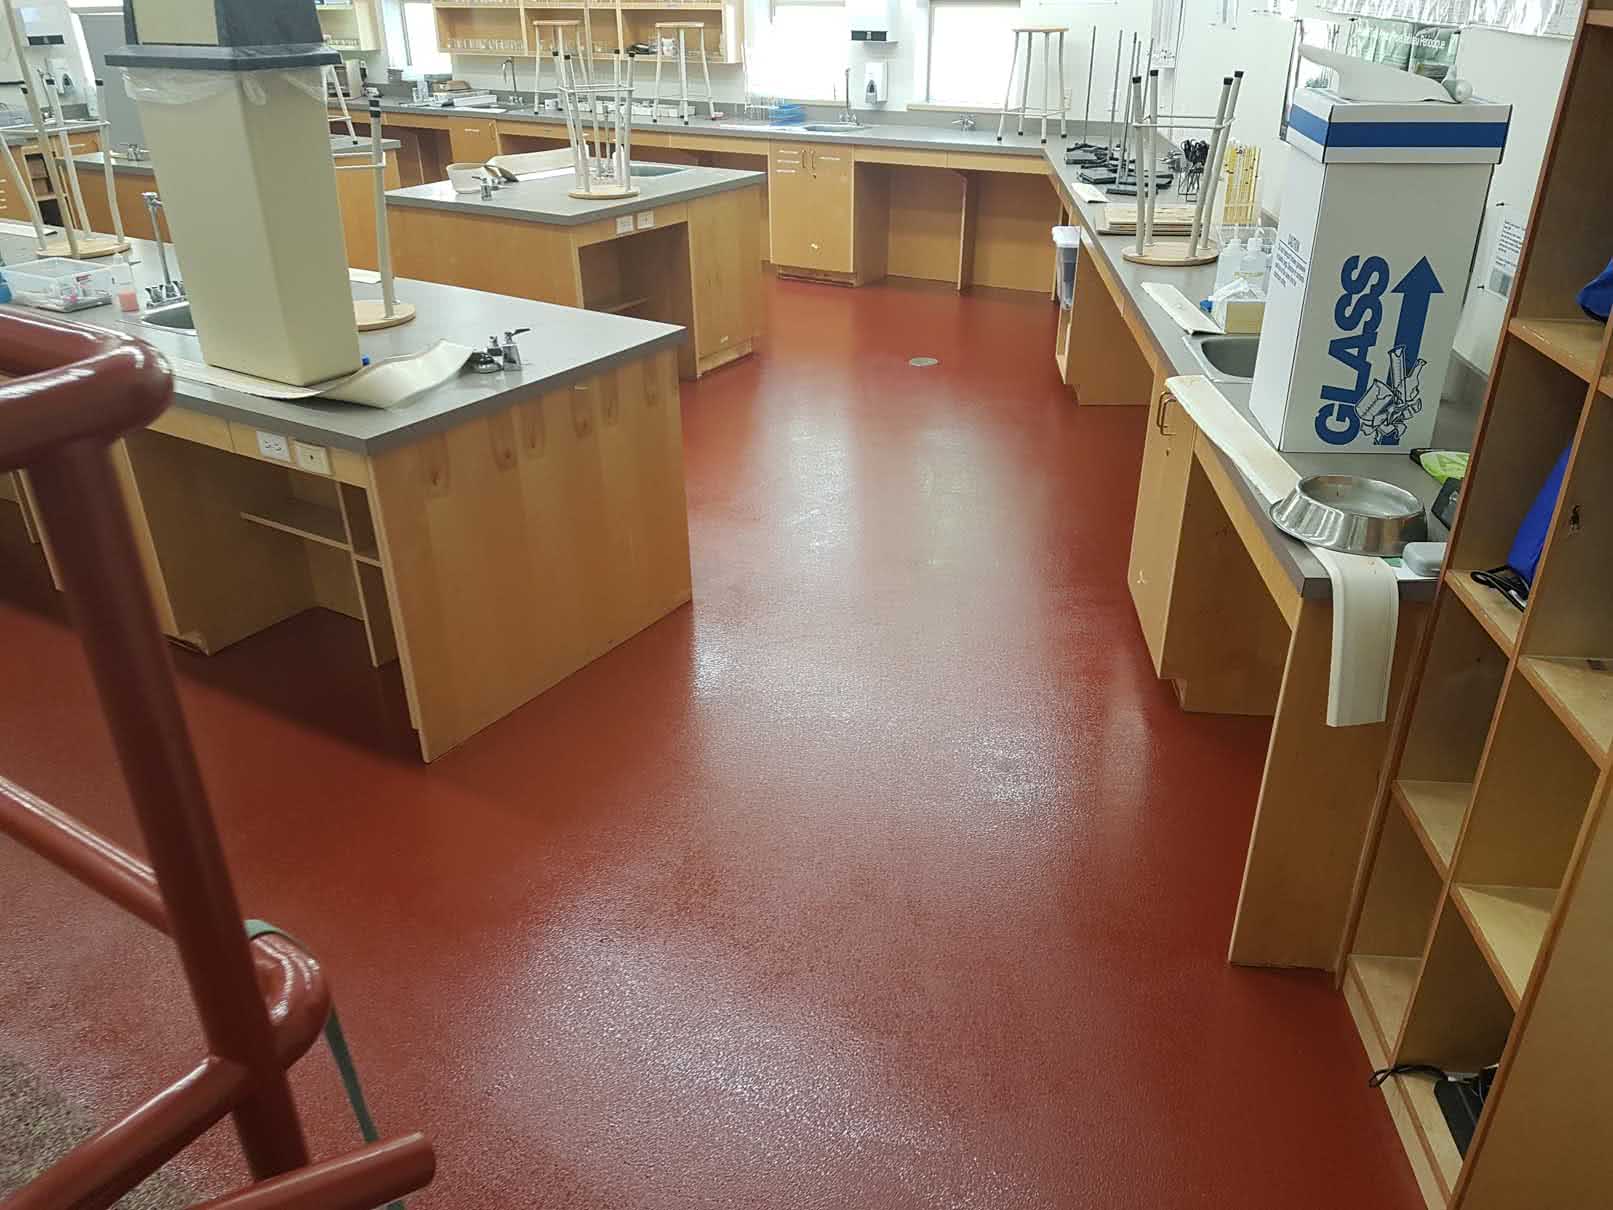 Coloured epoxy floor coating at Shawnigan Lake Elementary